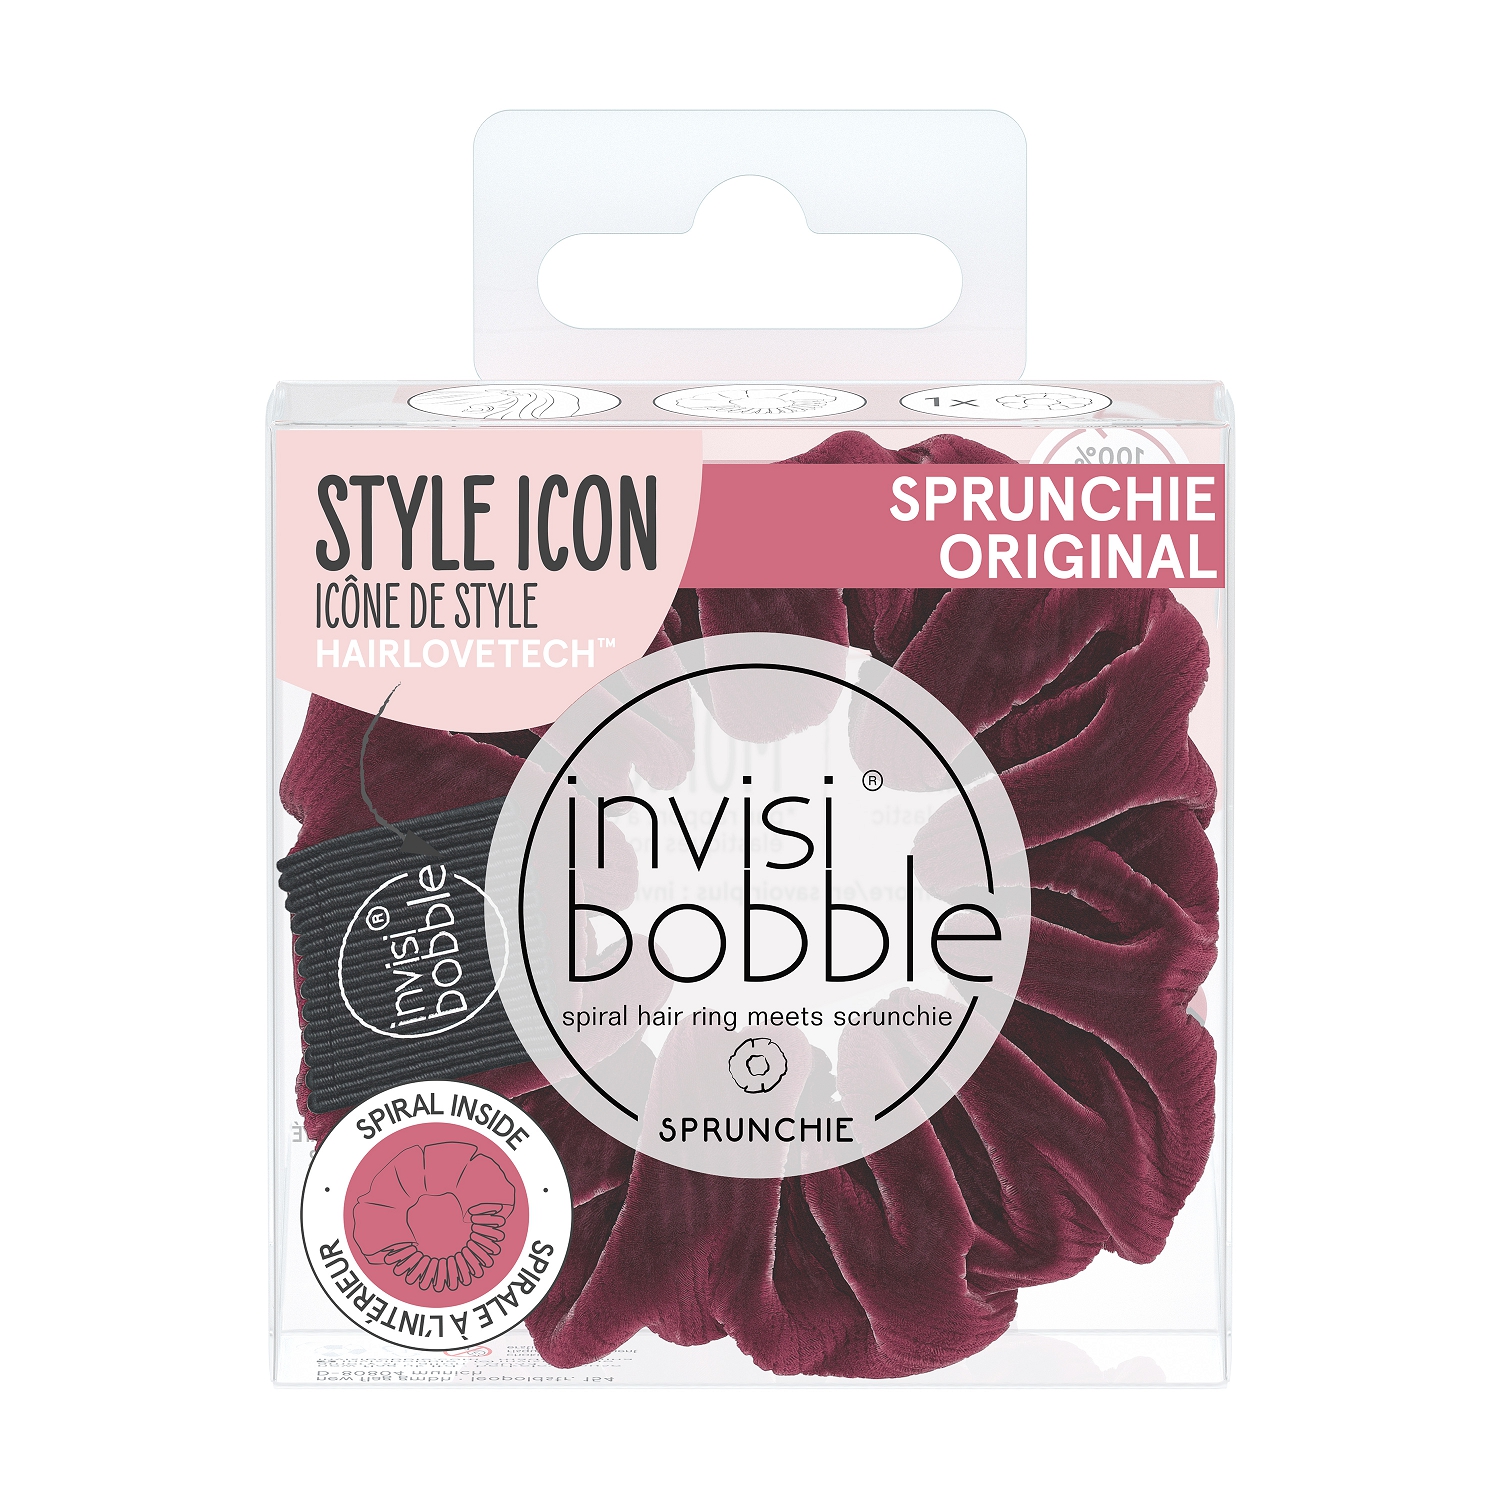 Sprunchie Red Wine is Fine Резинка-браслет для волос